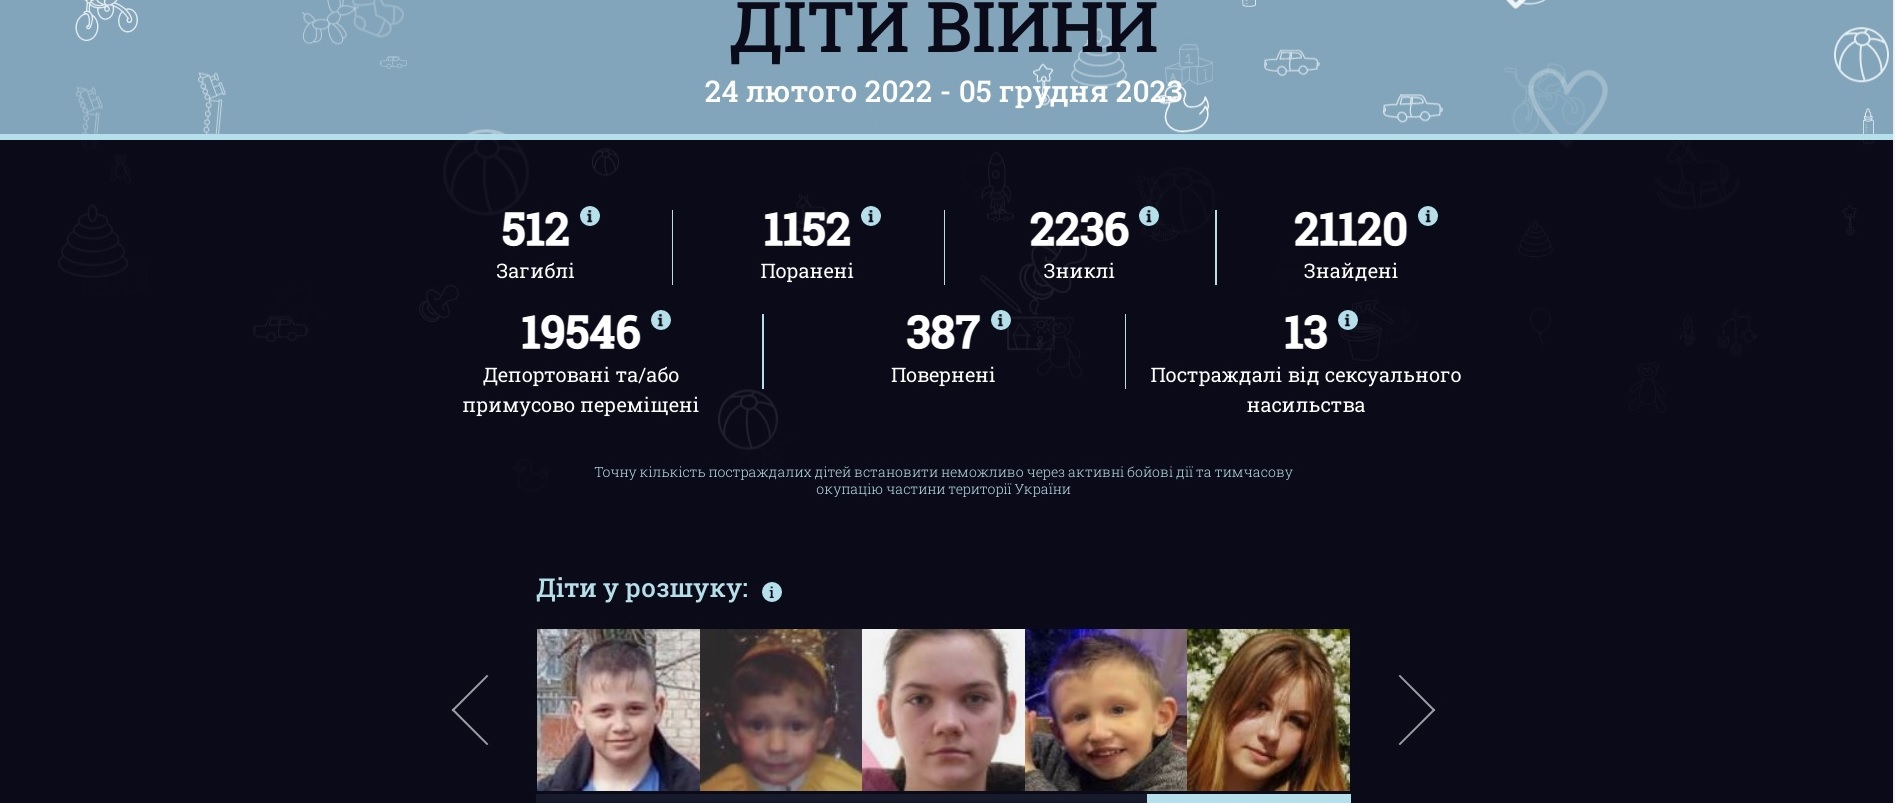 19546 украинских детей депортированы или принудительно перемещены. Скрин: childrenofwar.gov.ua